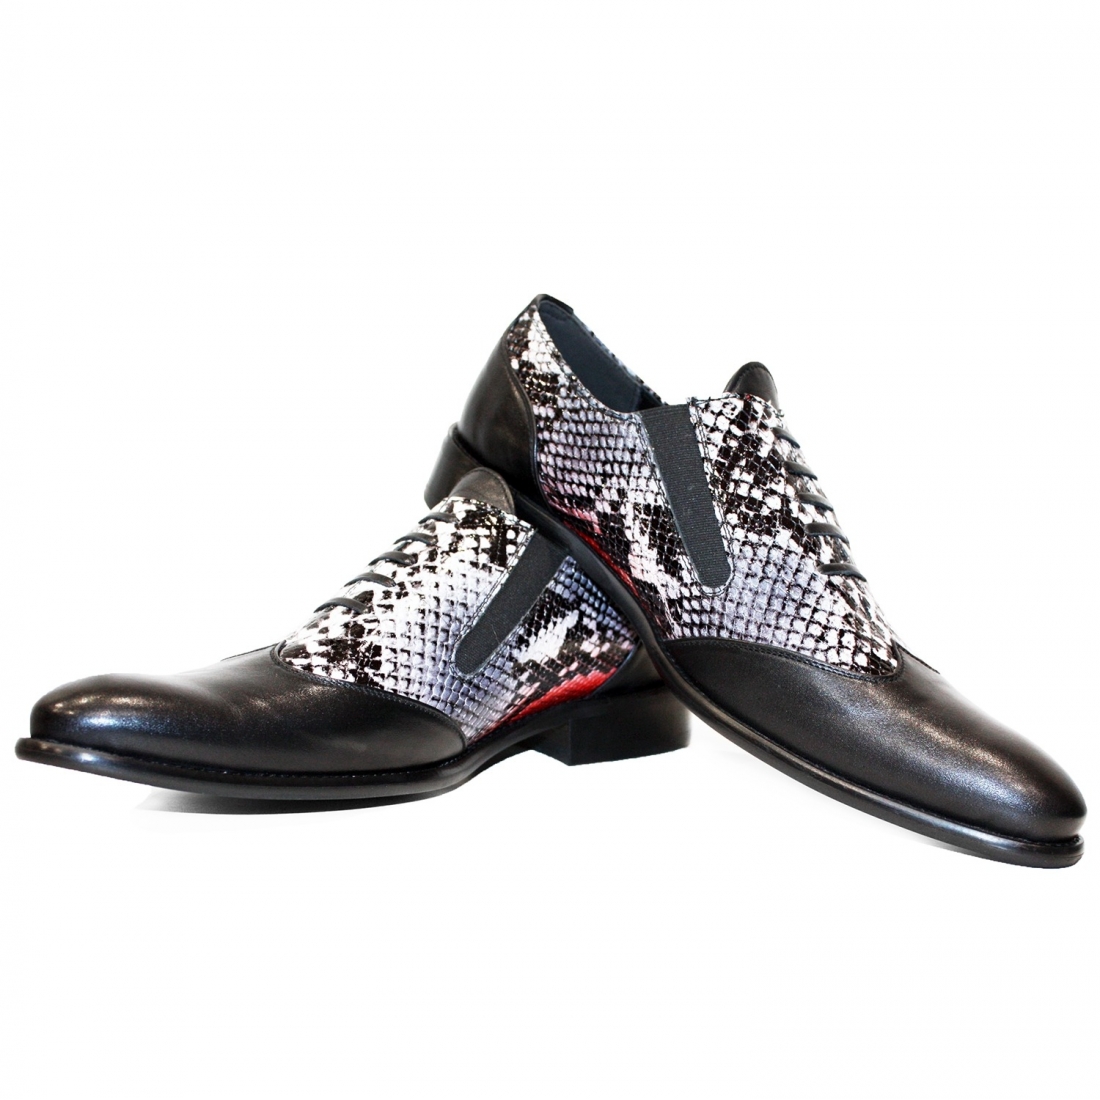 Modello Triumpherro - Zapatillas Sin Cordones - Handmade Colorful Italian Leather Shoes